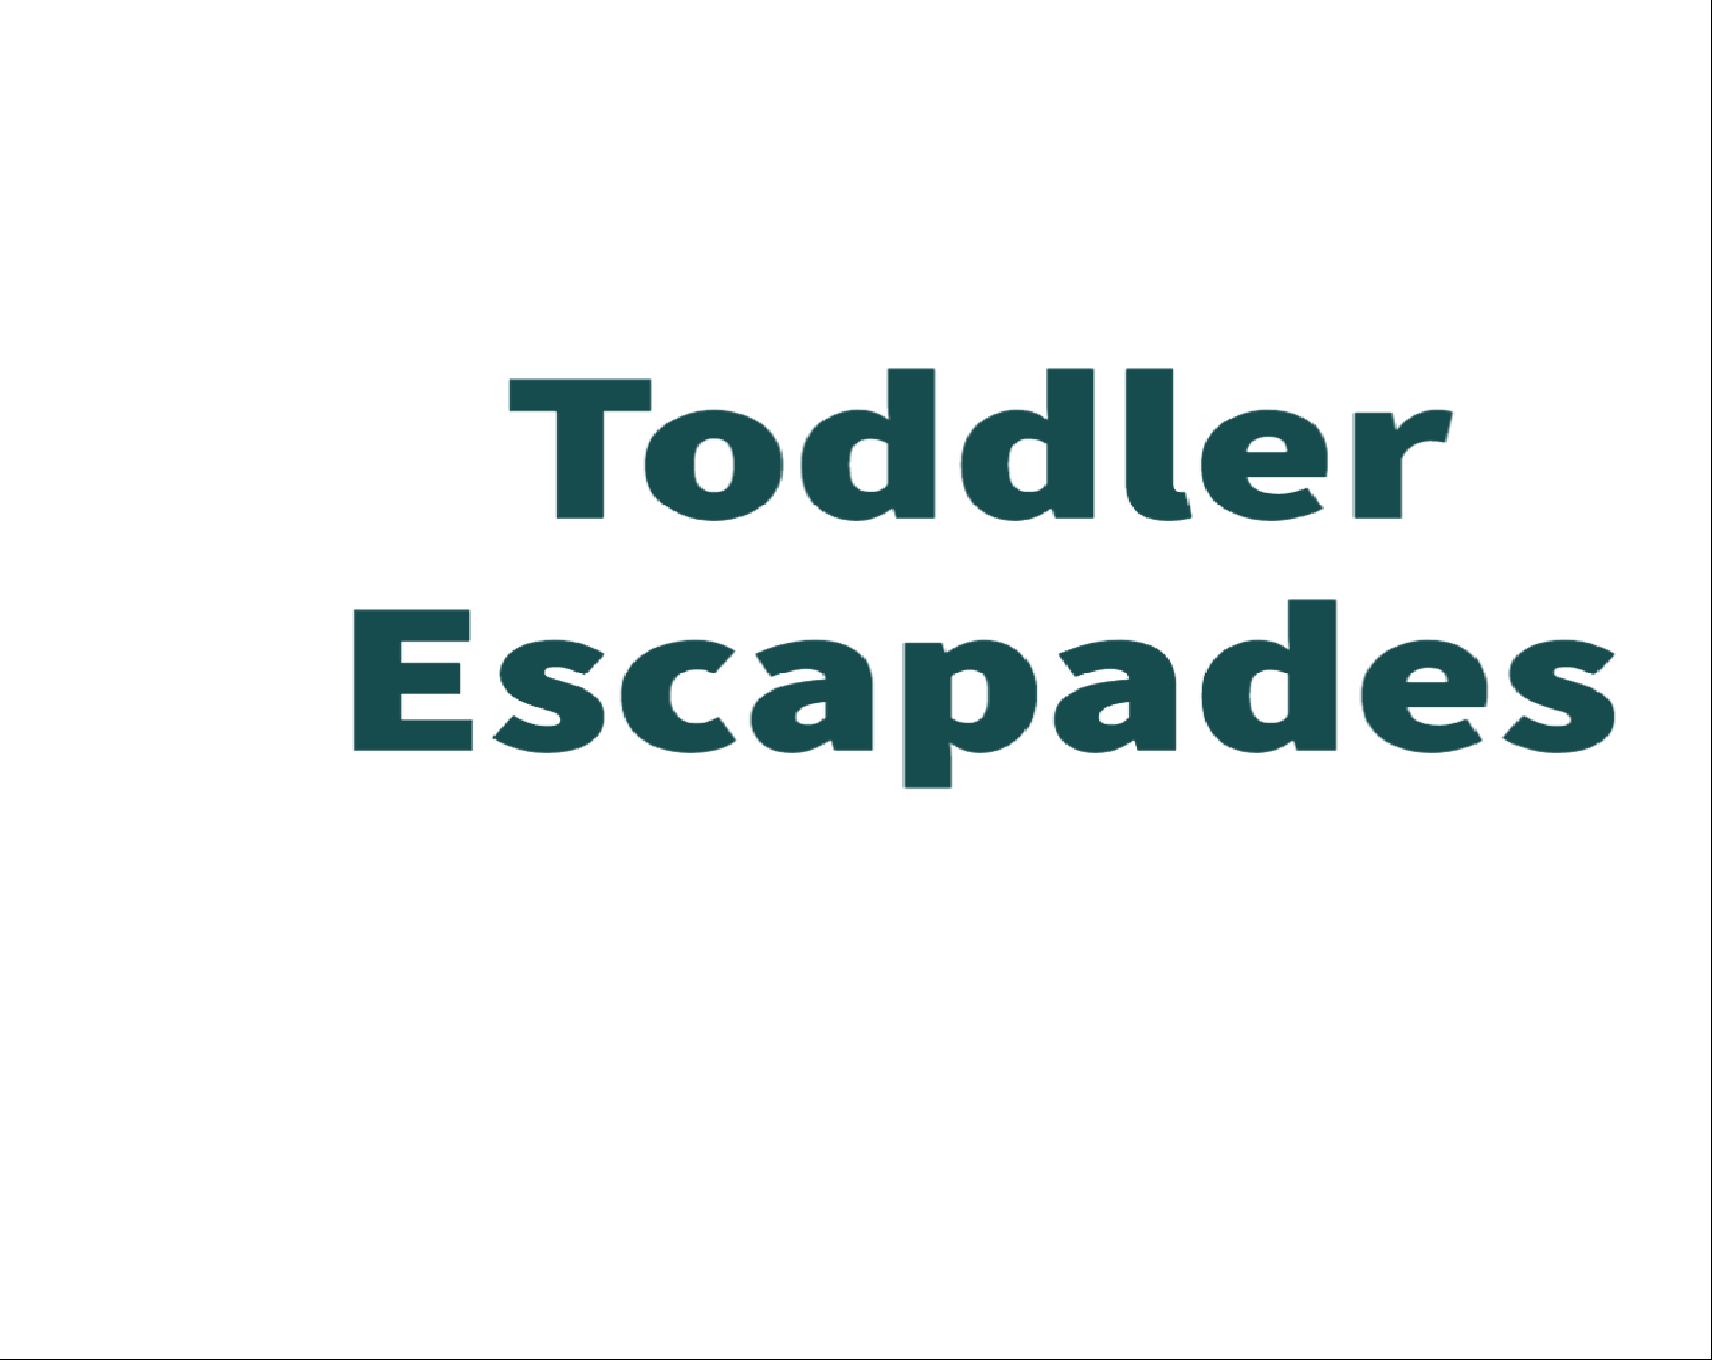 Toddler Escapades